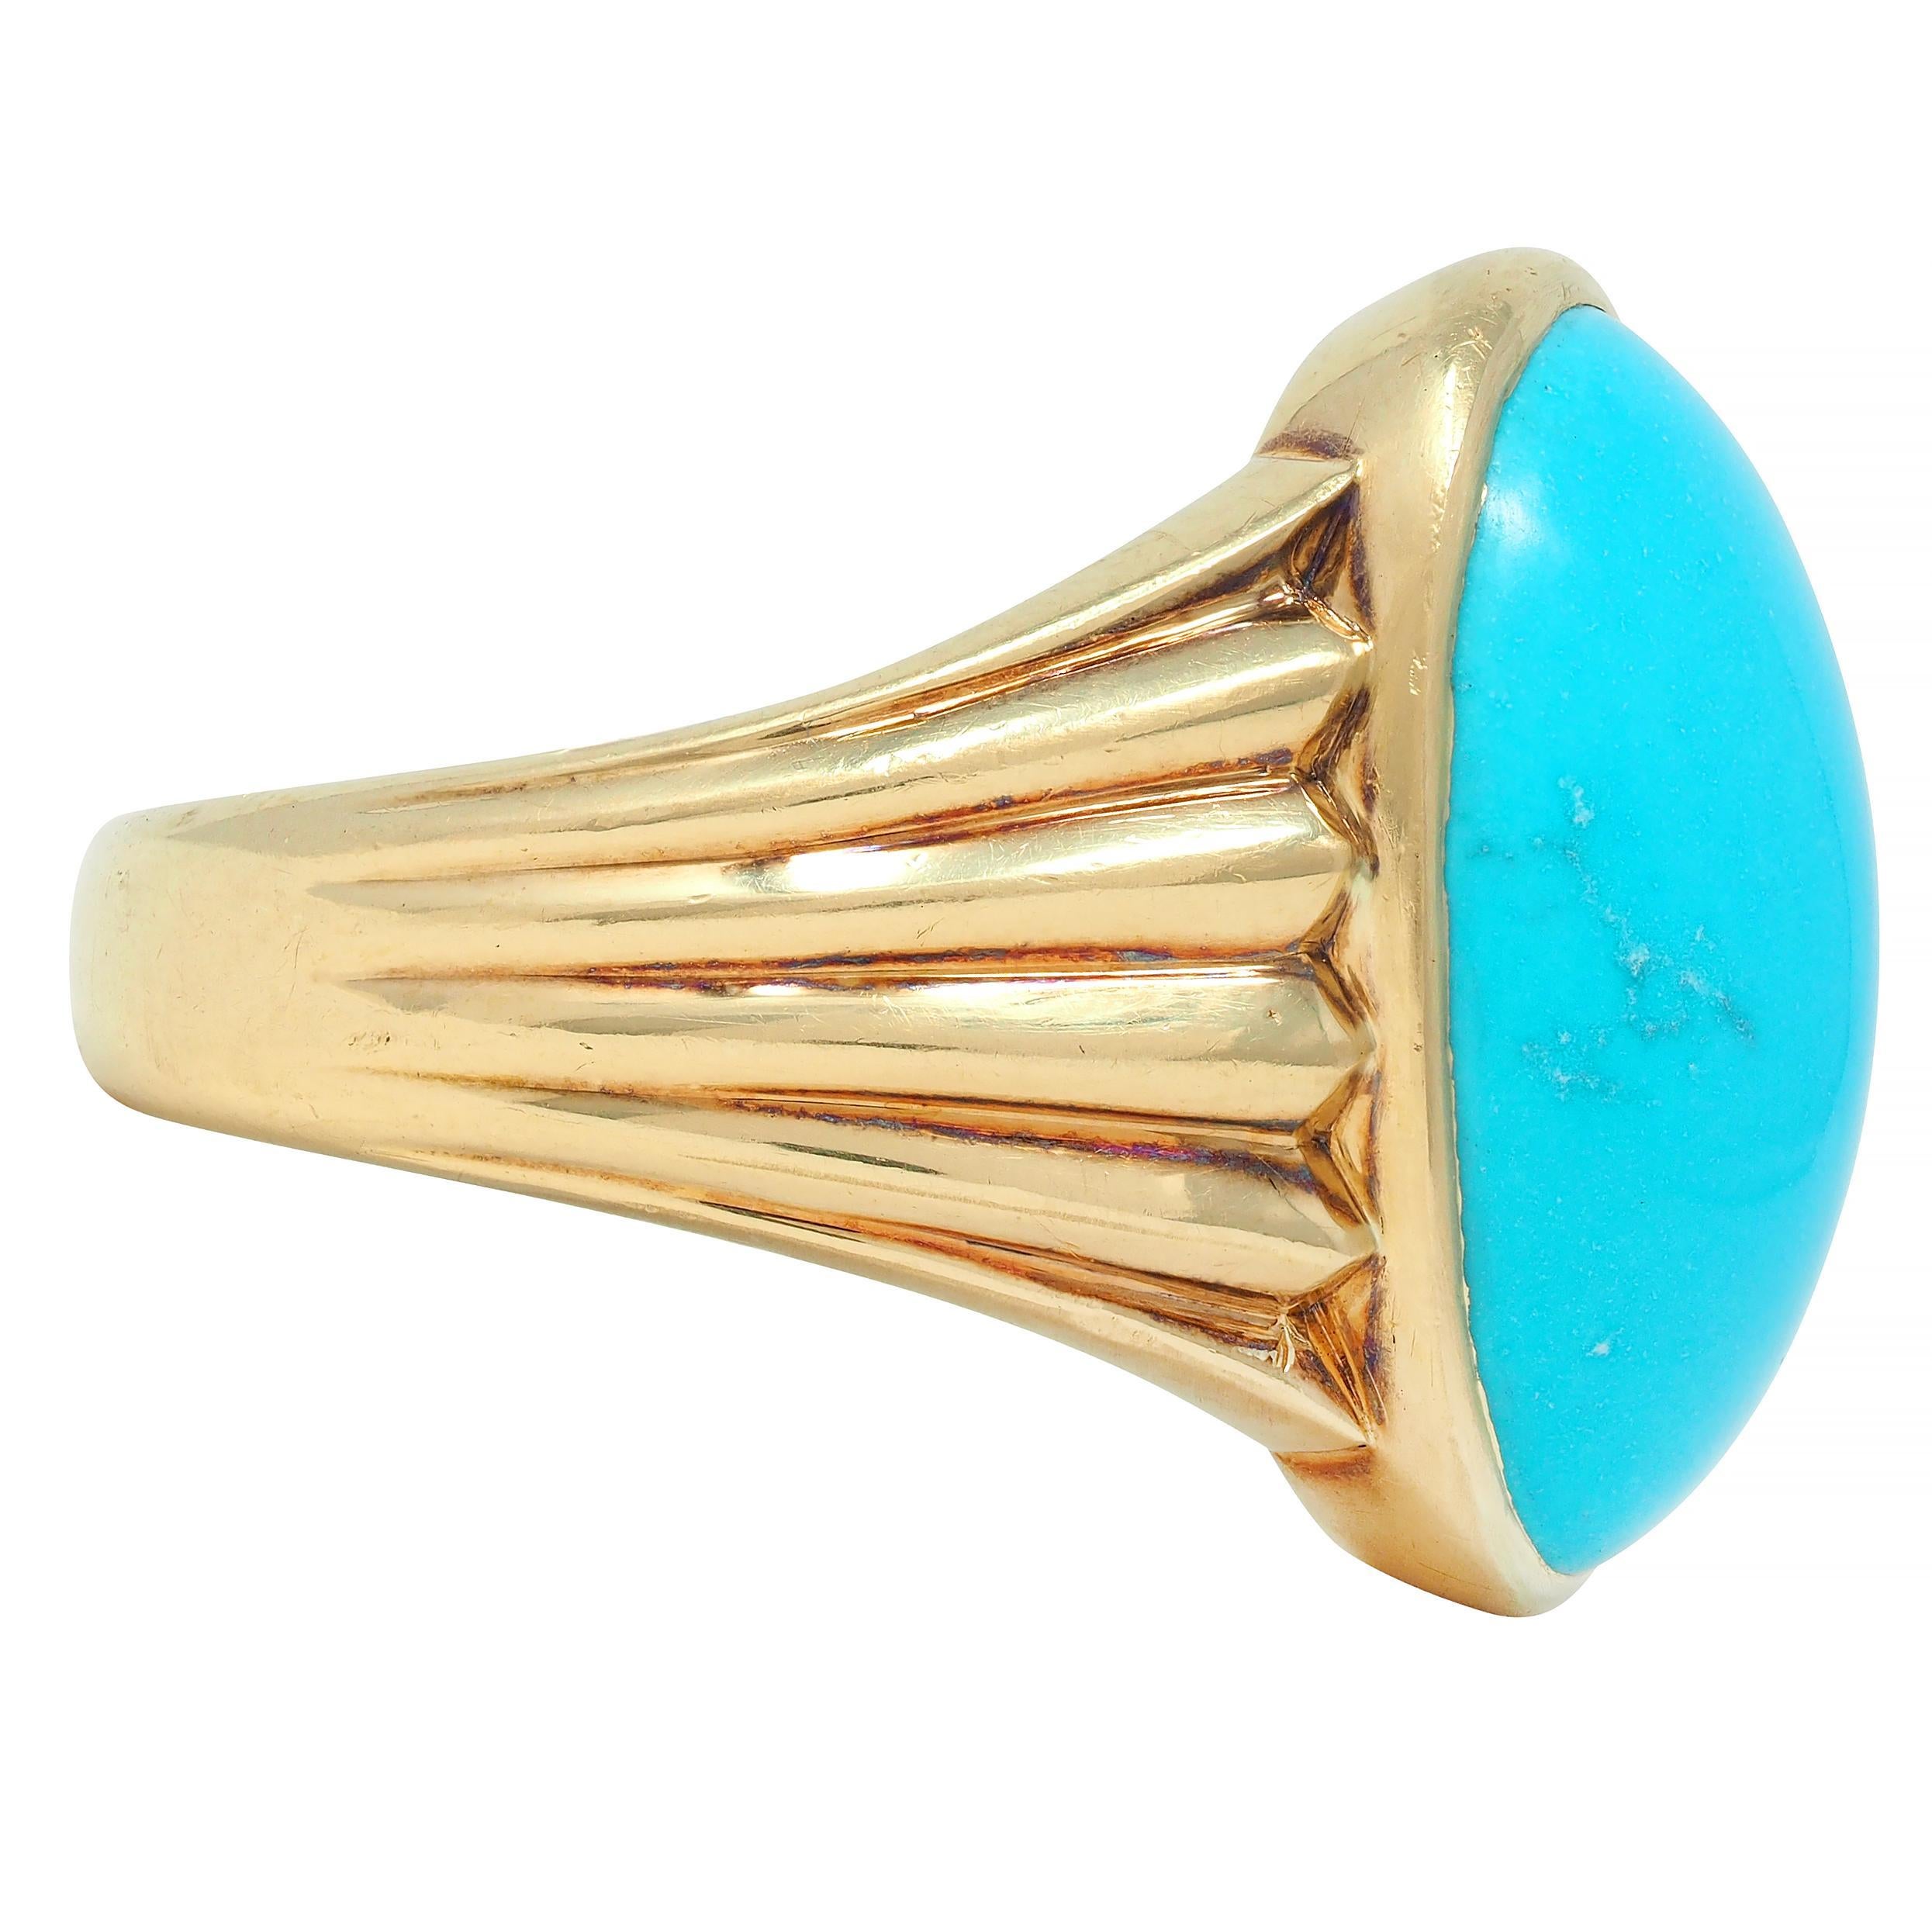 Centré sur un cabochon de turquoise de forme ovale mesurant 14,5 x 20,0 mm 
Bleu d'œuf de merle opaque avec une matrice grise subtile - serti d'une lunette
Flanqué d'épaules en chevron à motif de plis en éventail
Inscrit 